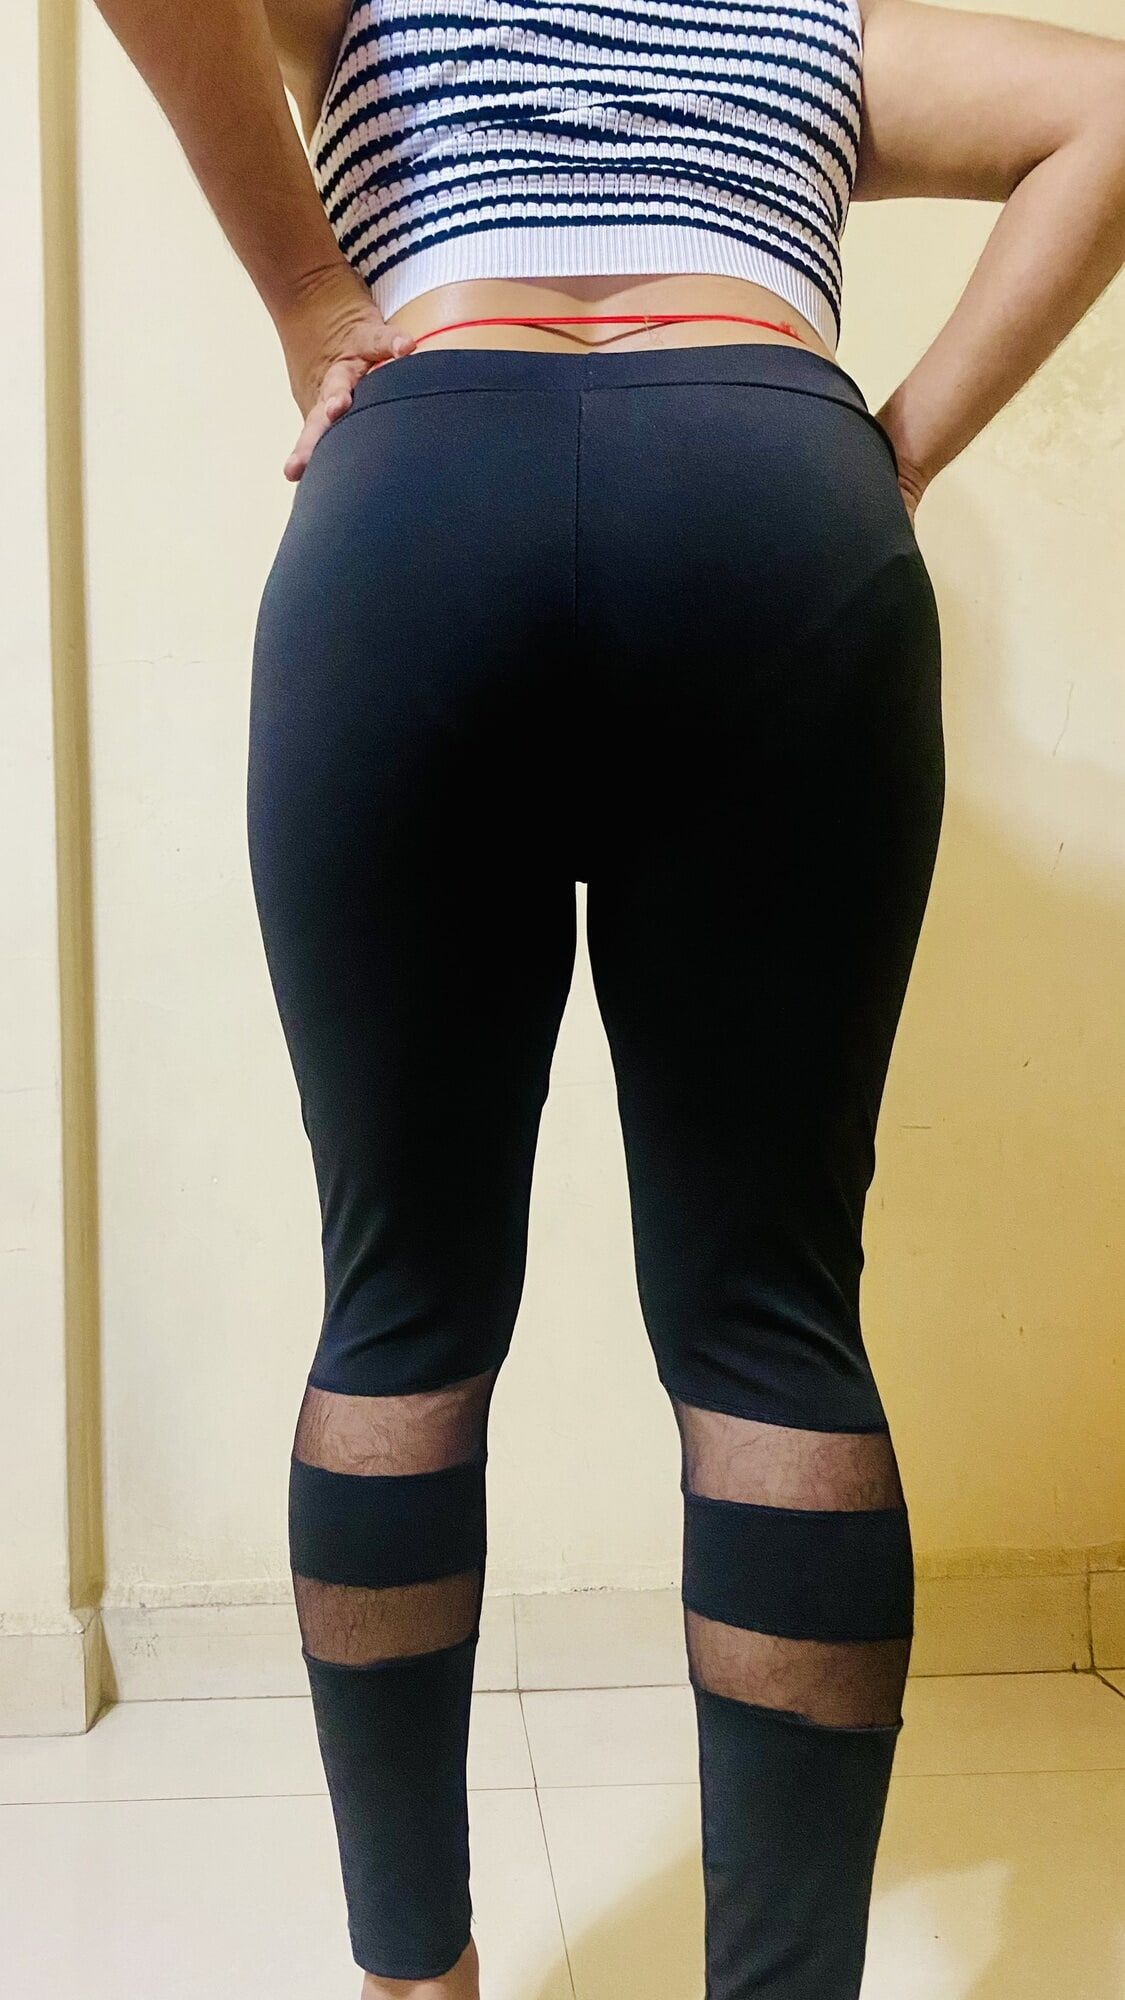 Perfect ass #44